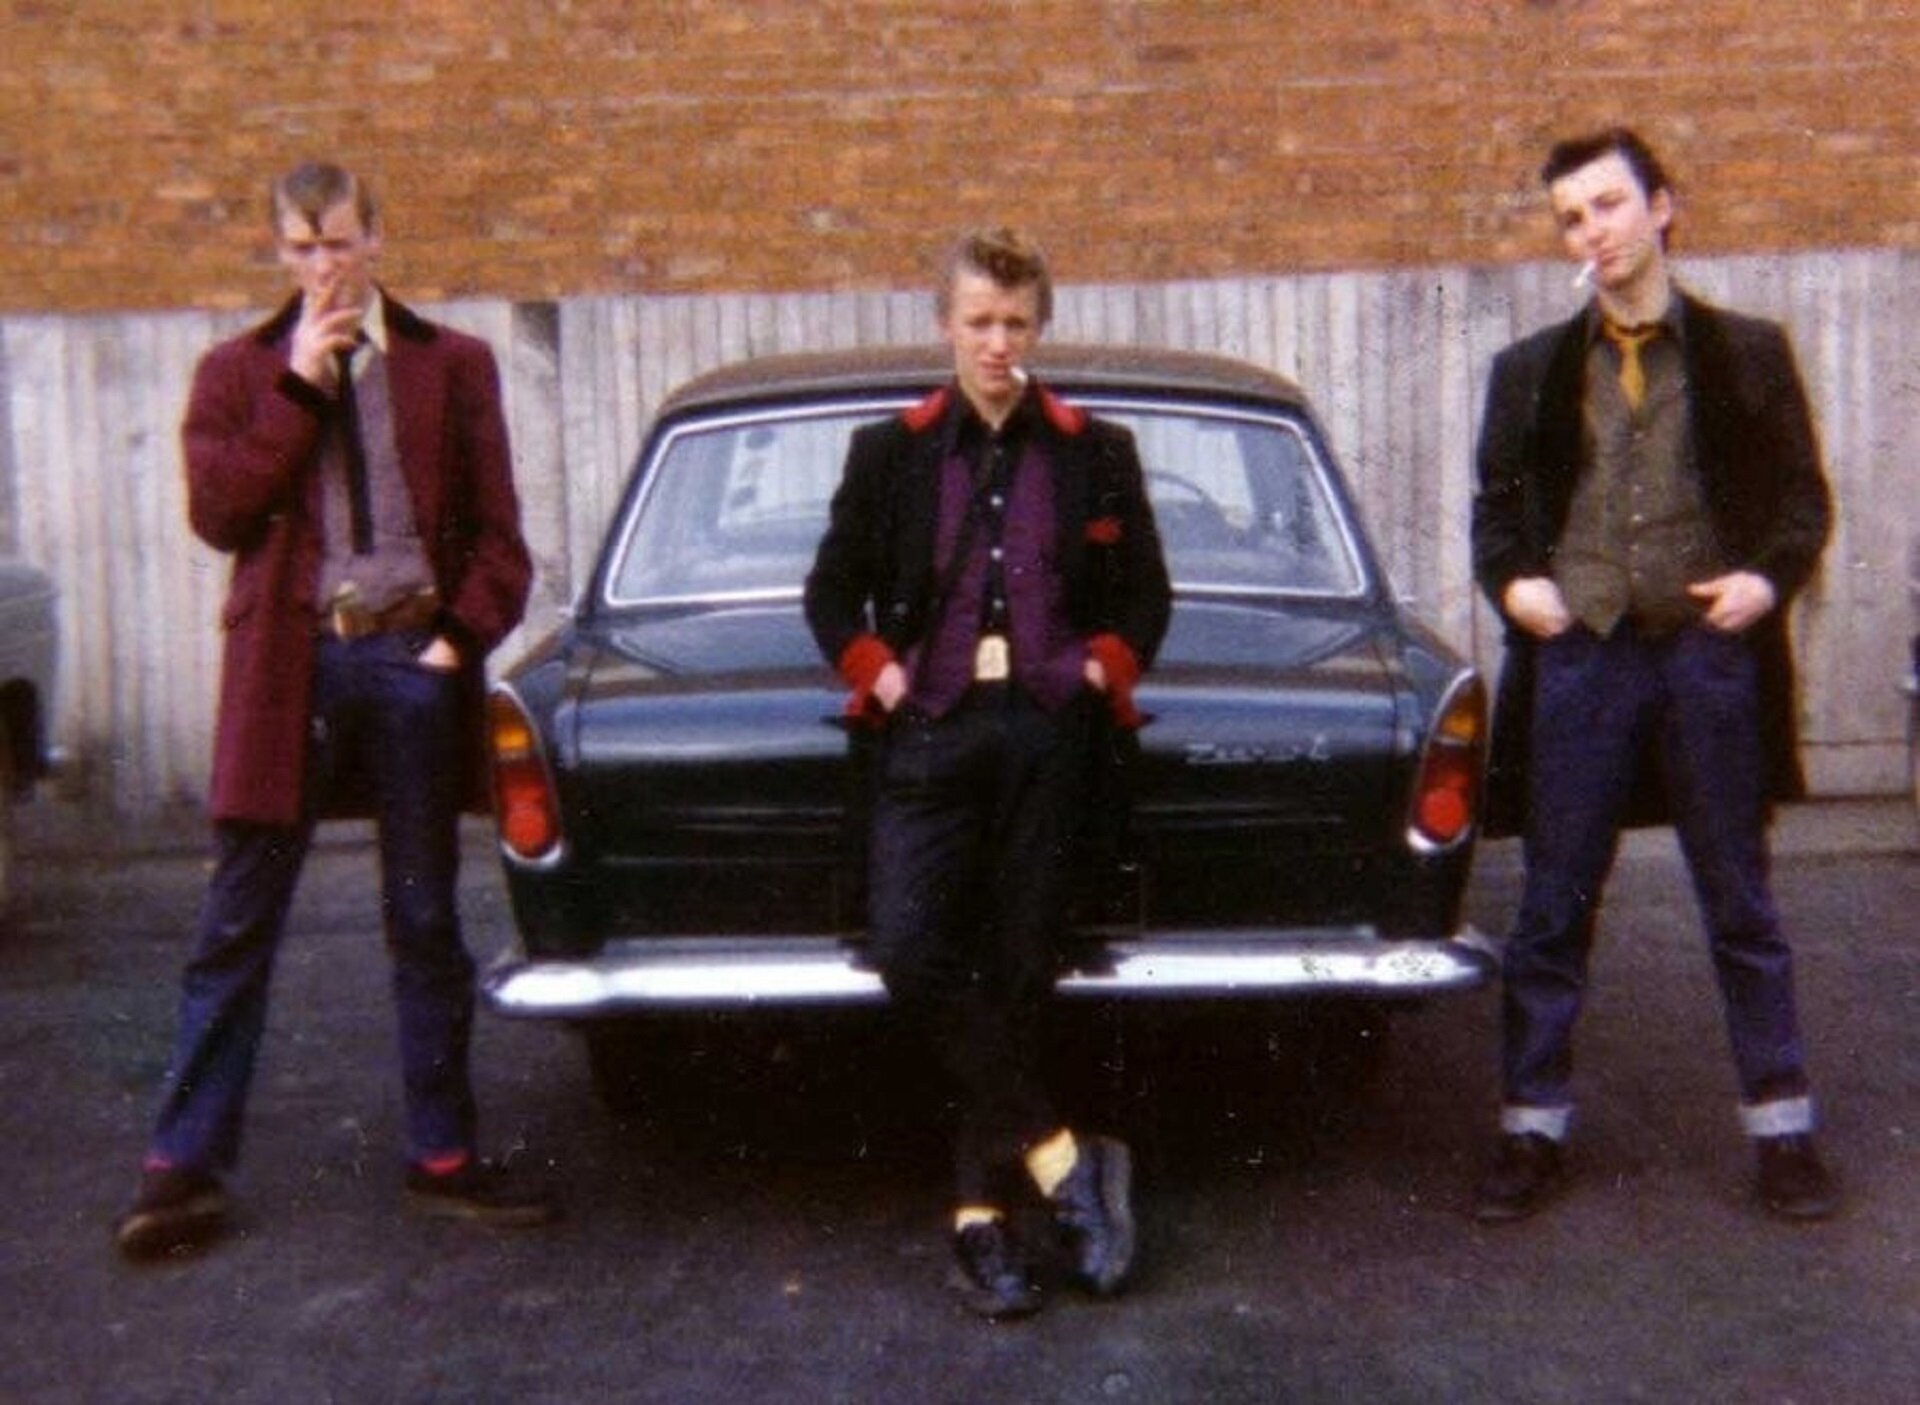 Ilustracja przedstawia trzech młodych mężczyzn na tle czarnego samochodu. Palą papierosy i mają ręce w kieszeniach. Mężczyzna w środku opiera się o bagażnik, ma na sobie żółto-czarny krawat, żółte skarpetki, czarne spodnie i buty, czarną, długą marynarkę z czerwonymi mankietami i kołnierzem oraz fioletową koszulę. Mężczyzna stojący po lewej stronie ma na sobie białą koszulę, fioletowy sweter, bordowe skarpetki i długą, bordową marynarkę z czarnymi mankietami i kołnierzem, czarny krawat i buty oraz niebieskie, dżinsowe spodnie. Mężczyzna stojący po prawej stronie ma na sobie żółty krawat, brązową kamizelkę, czarną długą marynarkę i buty oraz niebieskie, dżinsowe spodnie.